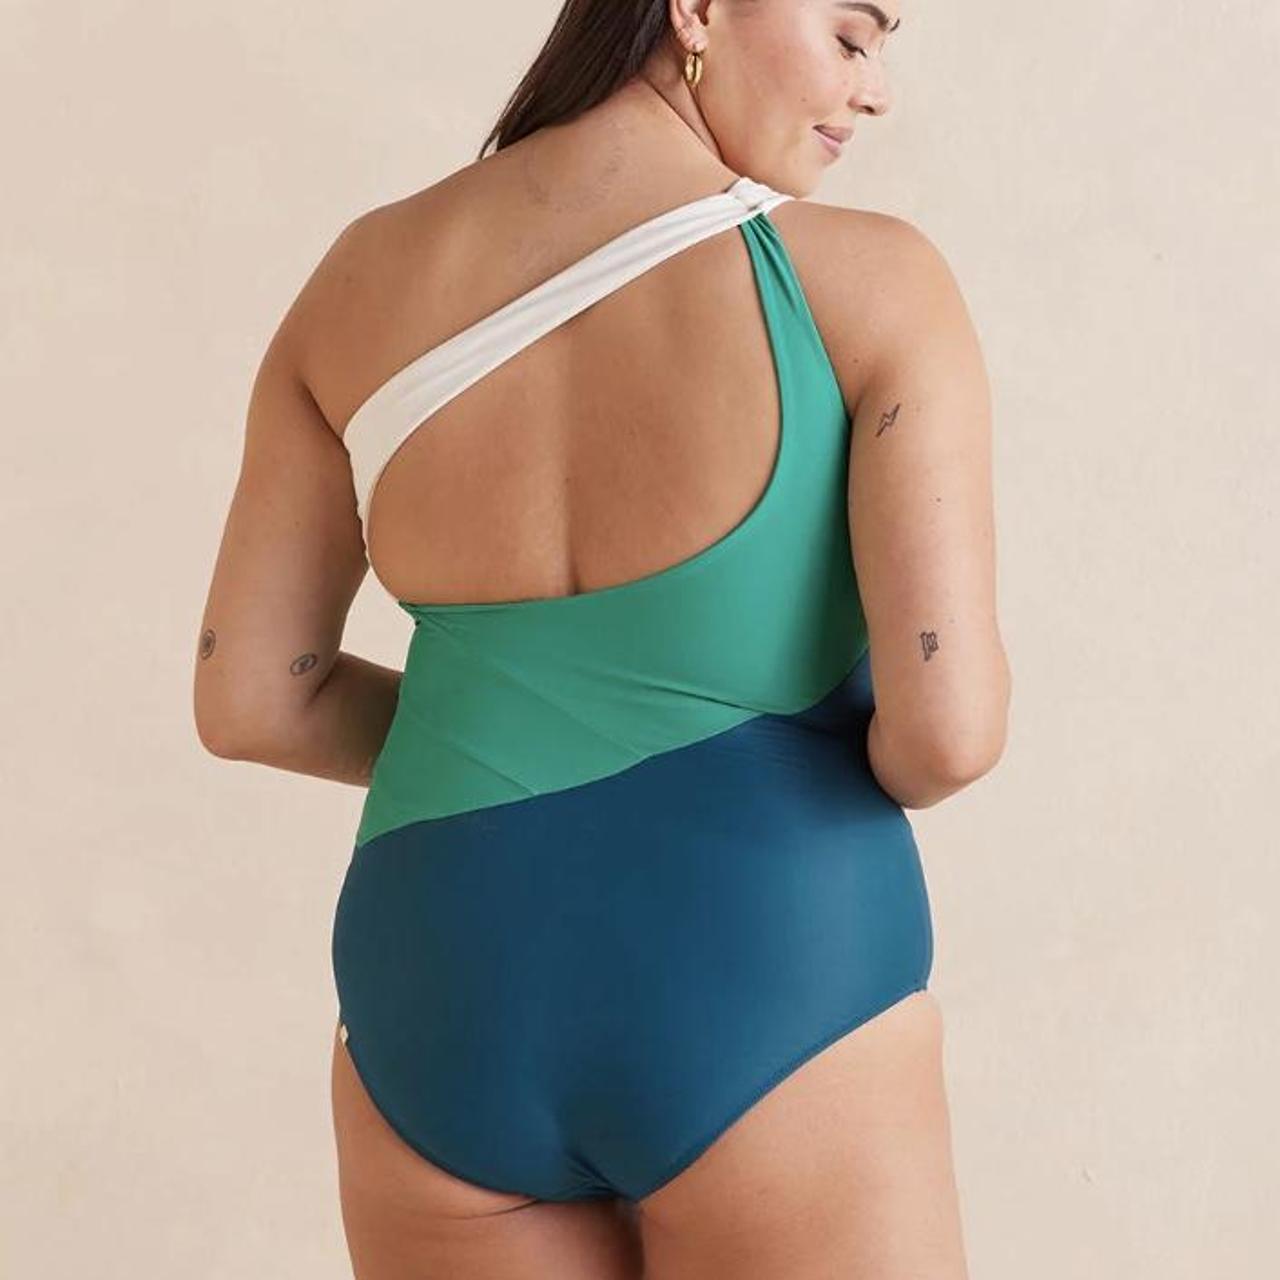 Summersalt The Sidestroke swimsuit - size 0, DEPOP